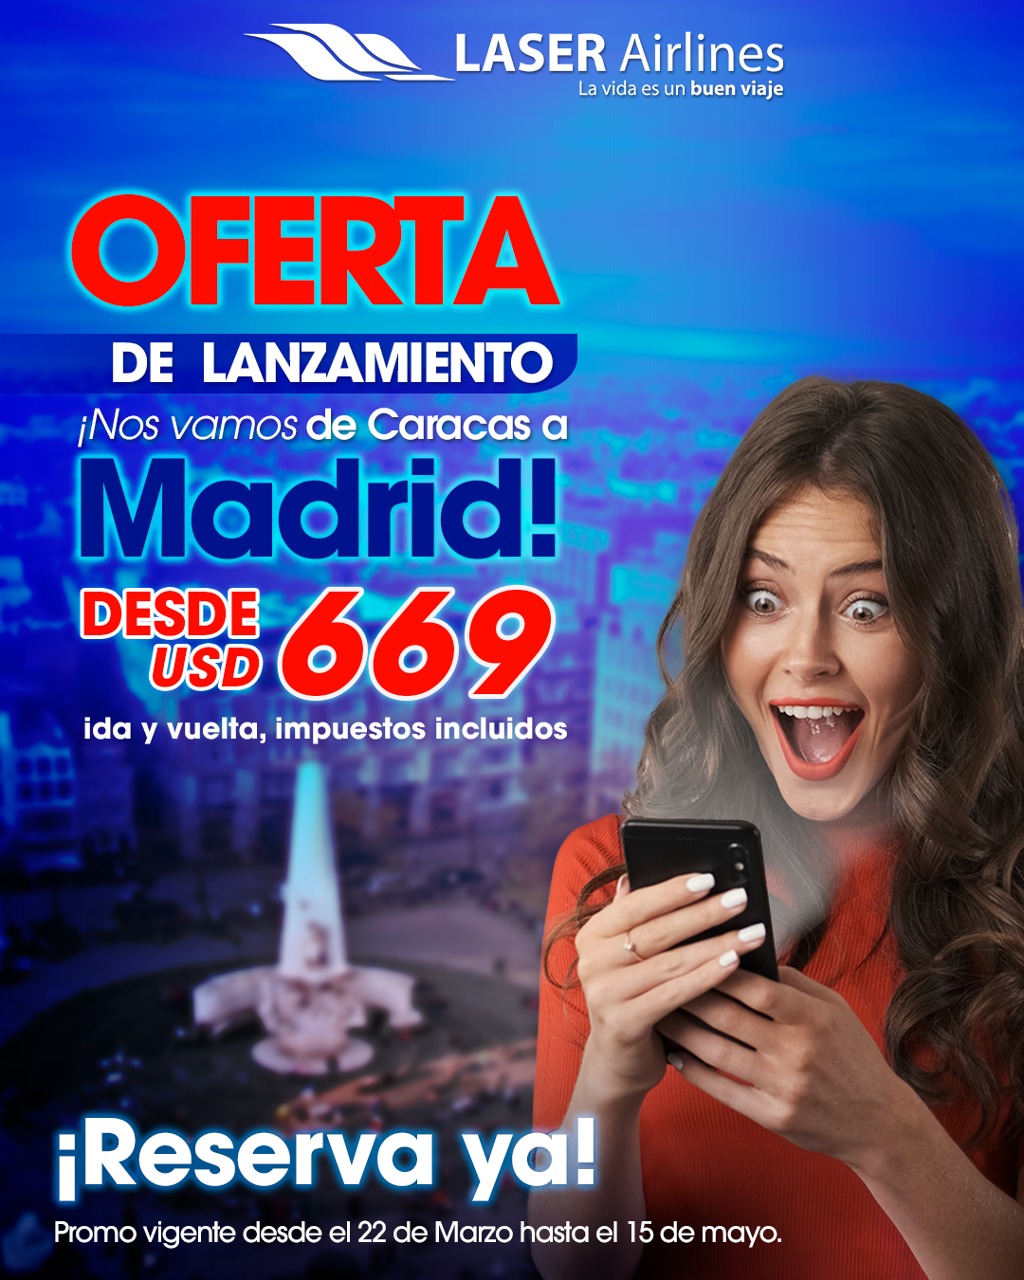 Desde US$ 669: El costo del boleto de Laser Airlines desde Caracas a Madrid